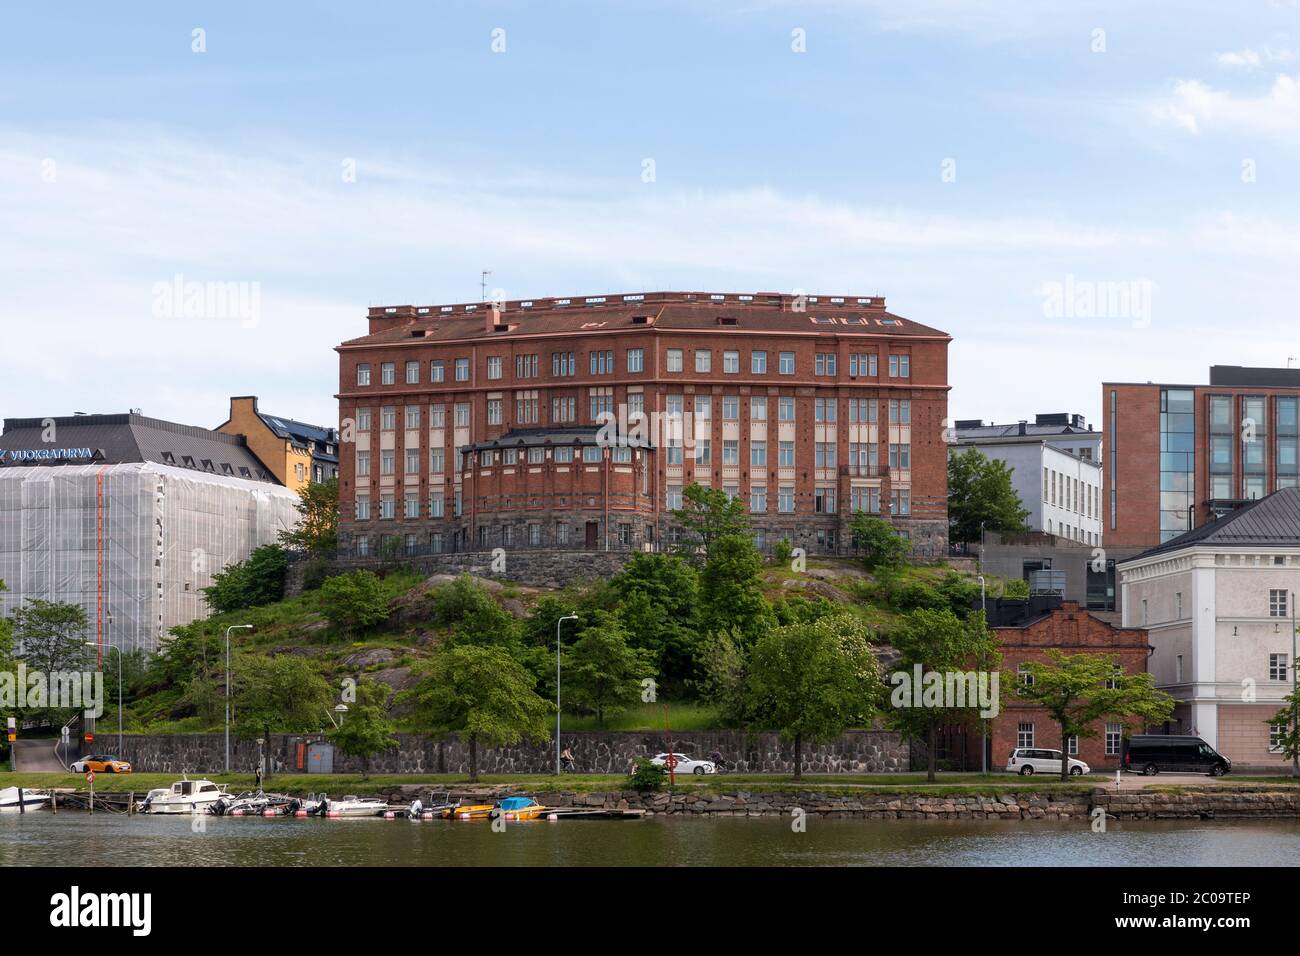 Psychologicum est en train de construire pour le département de physique de l'Université d'Helsinki. Il est construit sur le sol rocheux du centre-ville d'Helsinki, sur le site du front de mer. Banque D'Images